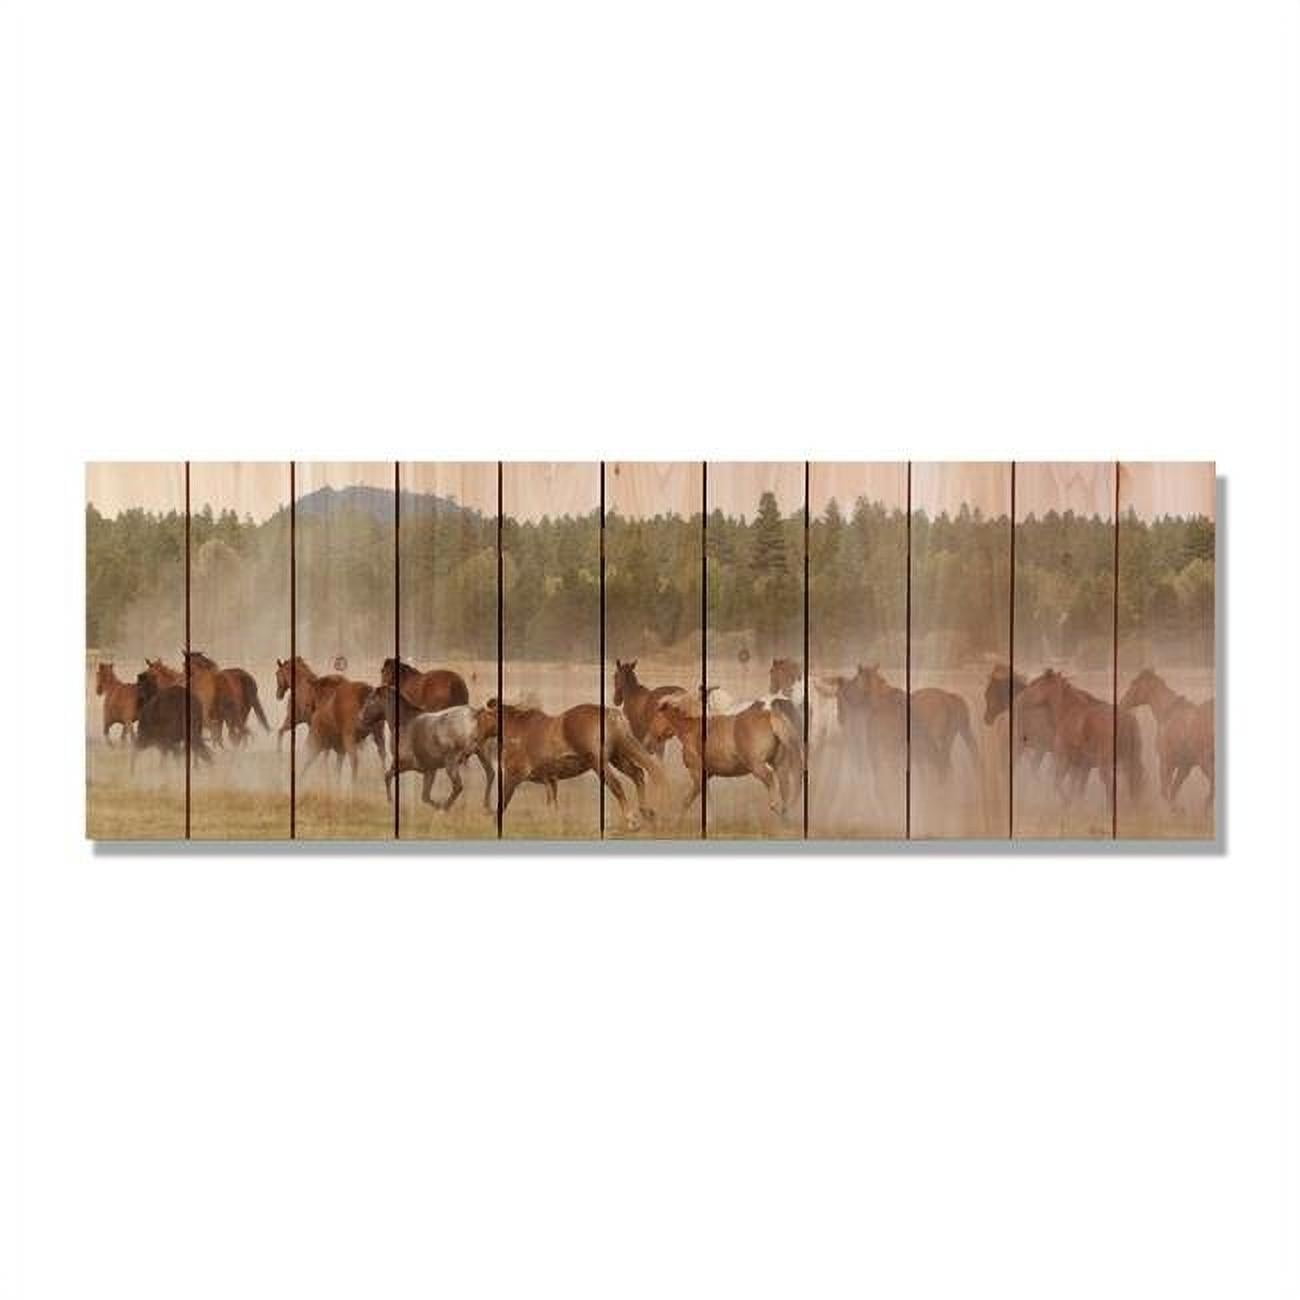 60 X 20 In. Wild Horses Inside & Outside Cedar Wall Art